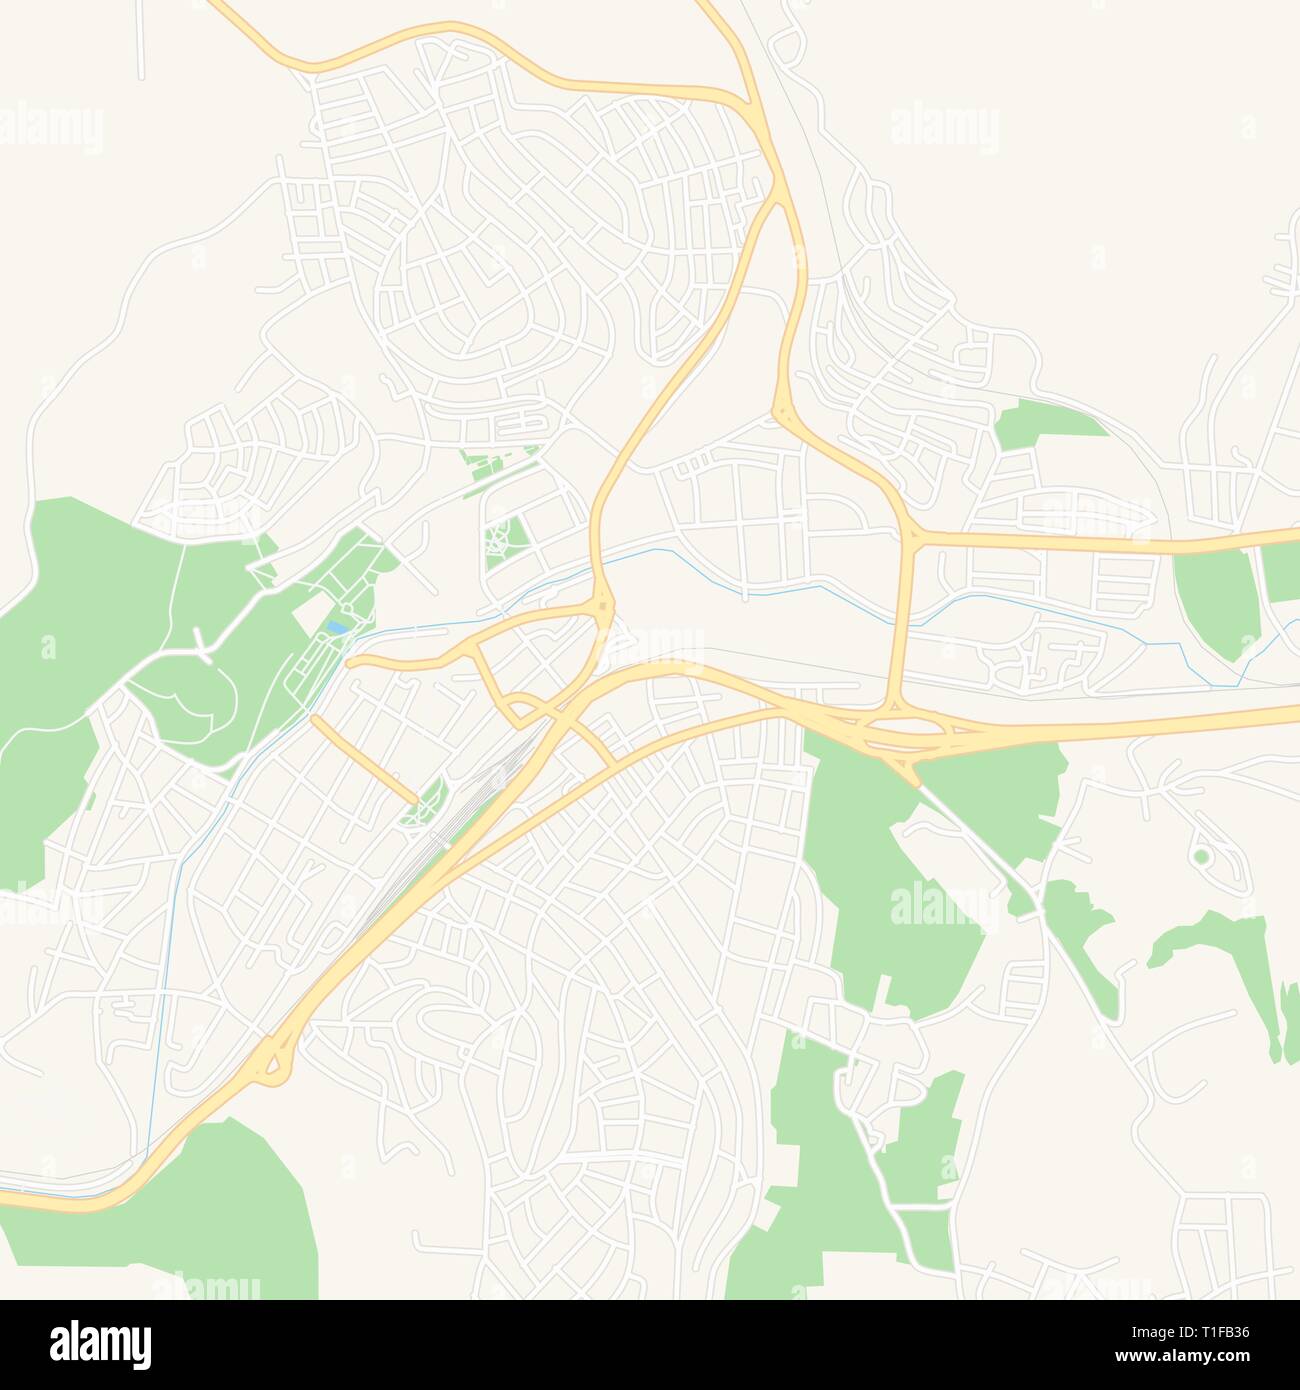 Druckbare Karte von Pernik, Bulgarien mit Haupt- und Nebenstraßen und größere Bahnen. Diese Karte ist sorgfältig für das Routing und die Platzierung von individuell gestalteten Stock Vektor